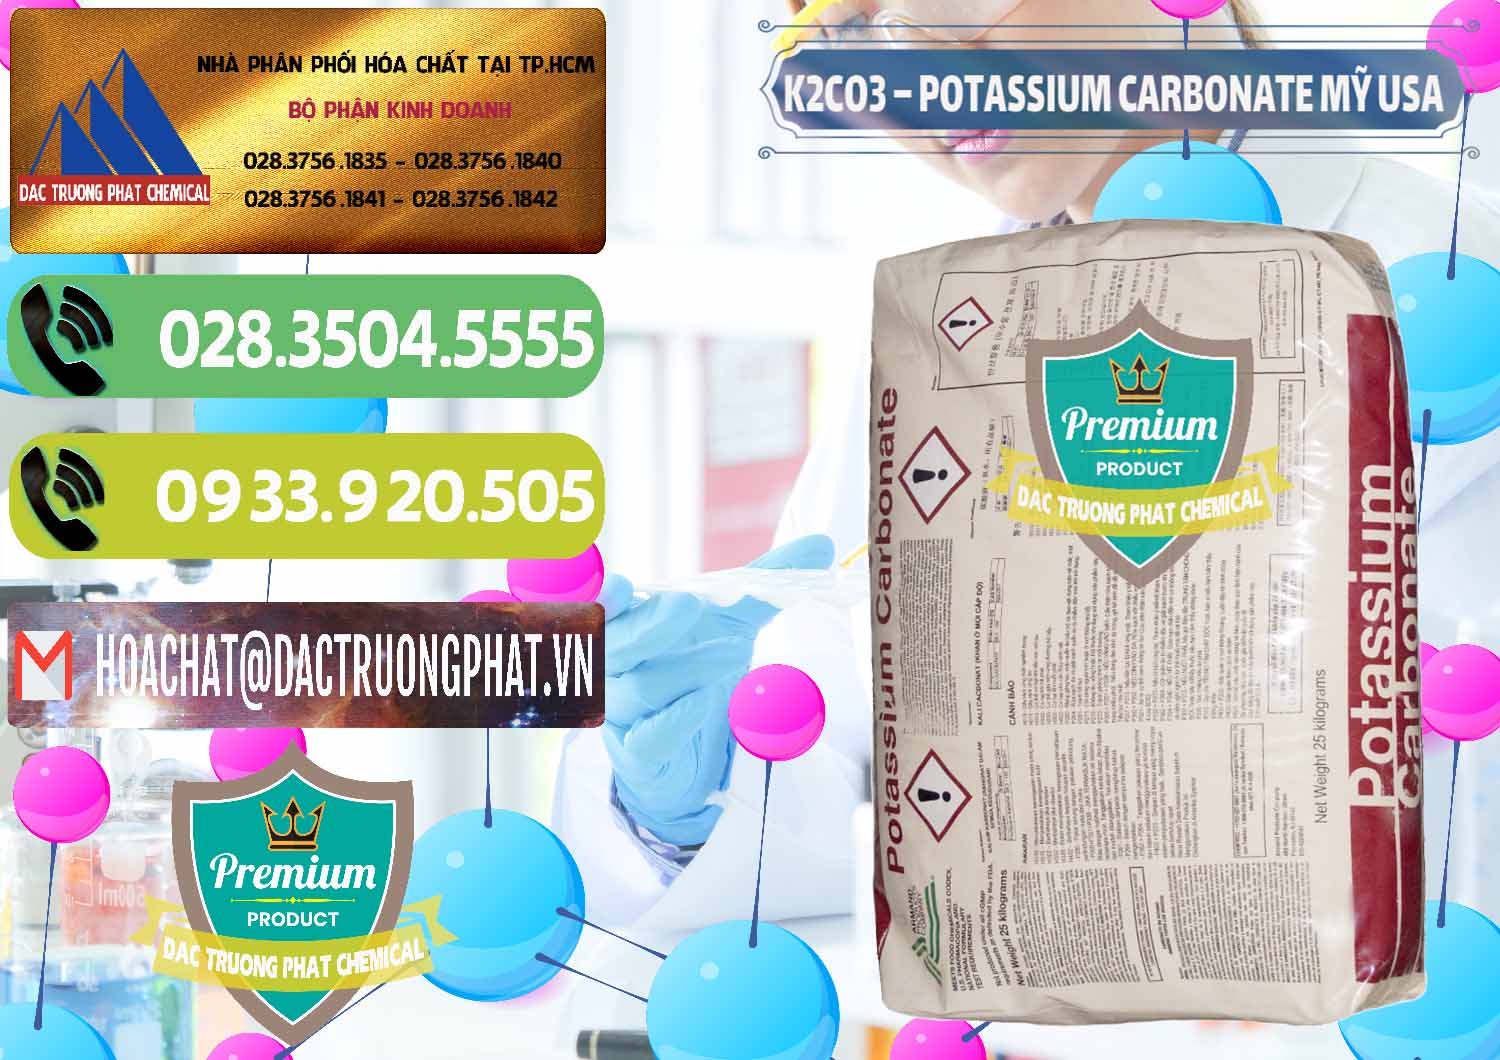 Cty cung ứng _ bán K2Co3 – Potassium Carbonate Mỹ USA - 0082 - Đơn vị cung cấp & kinh doanh hóa chất tại TP.HCM - hoachatmientay.vn